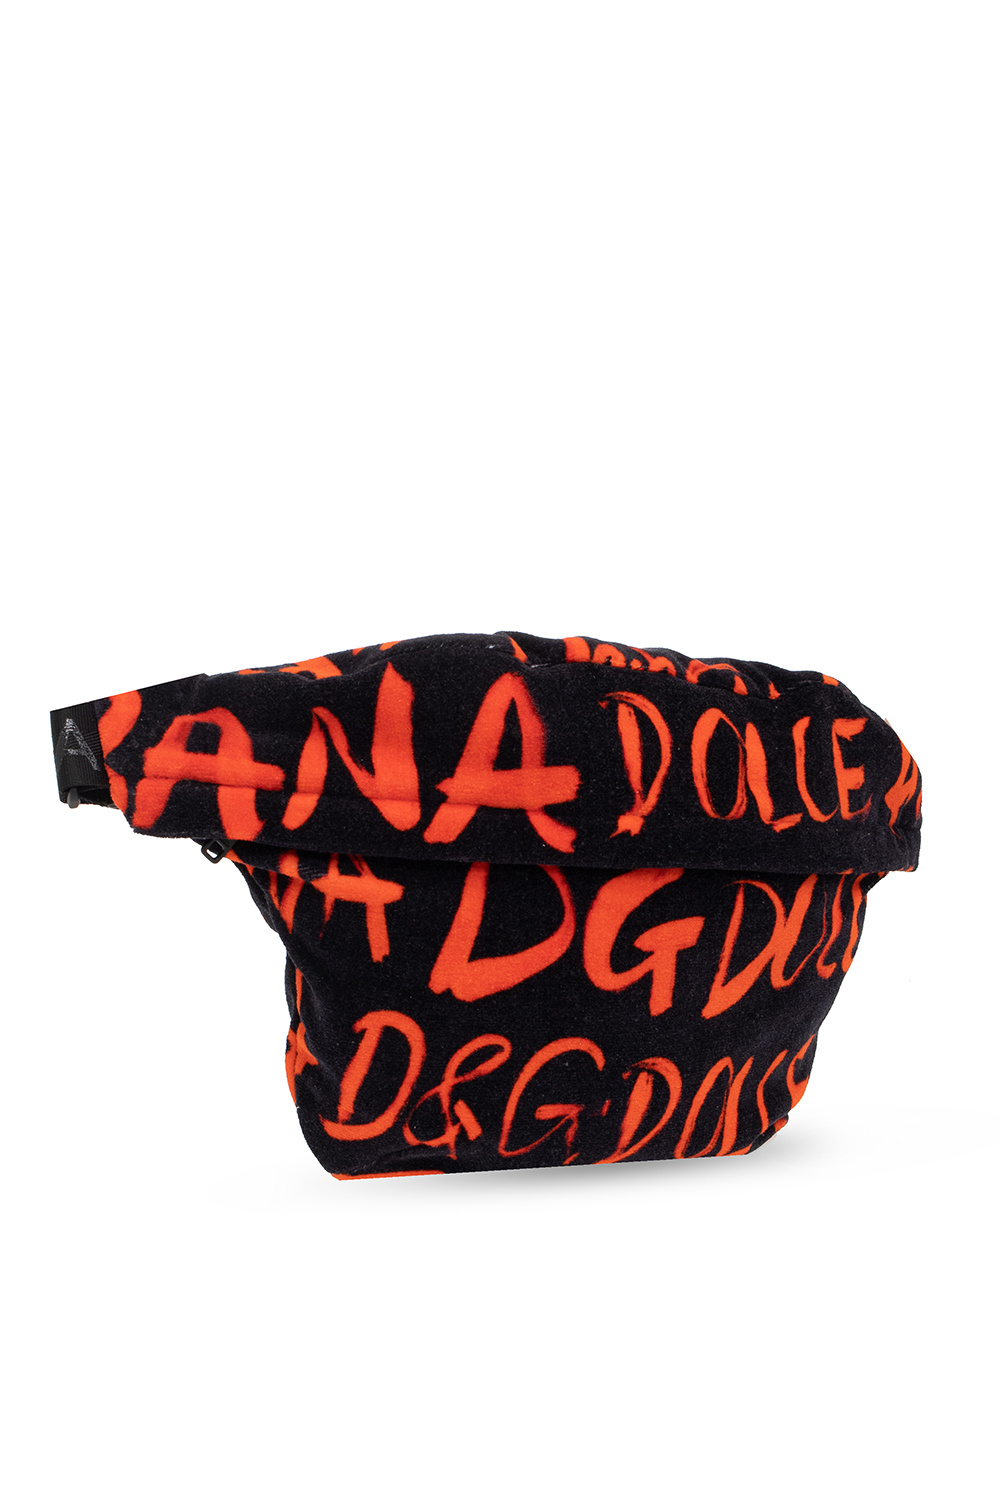 Dolce & Gabbana Beach towel & belt bag set